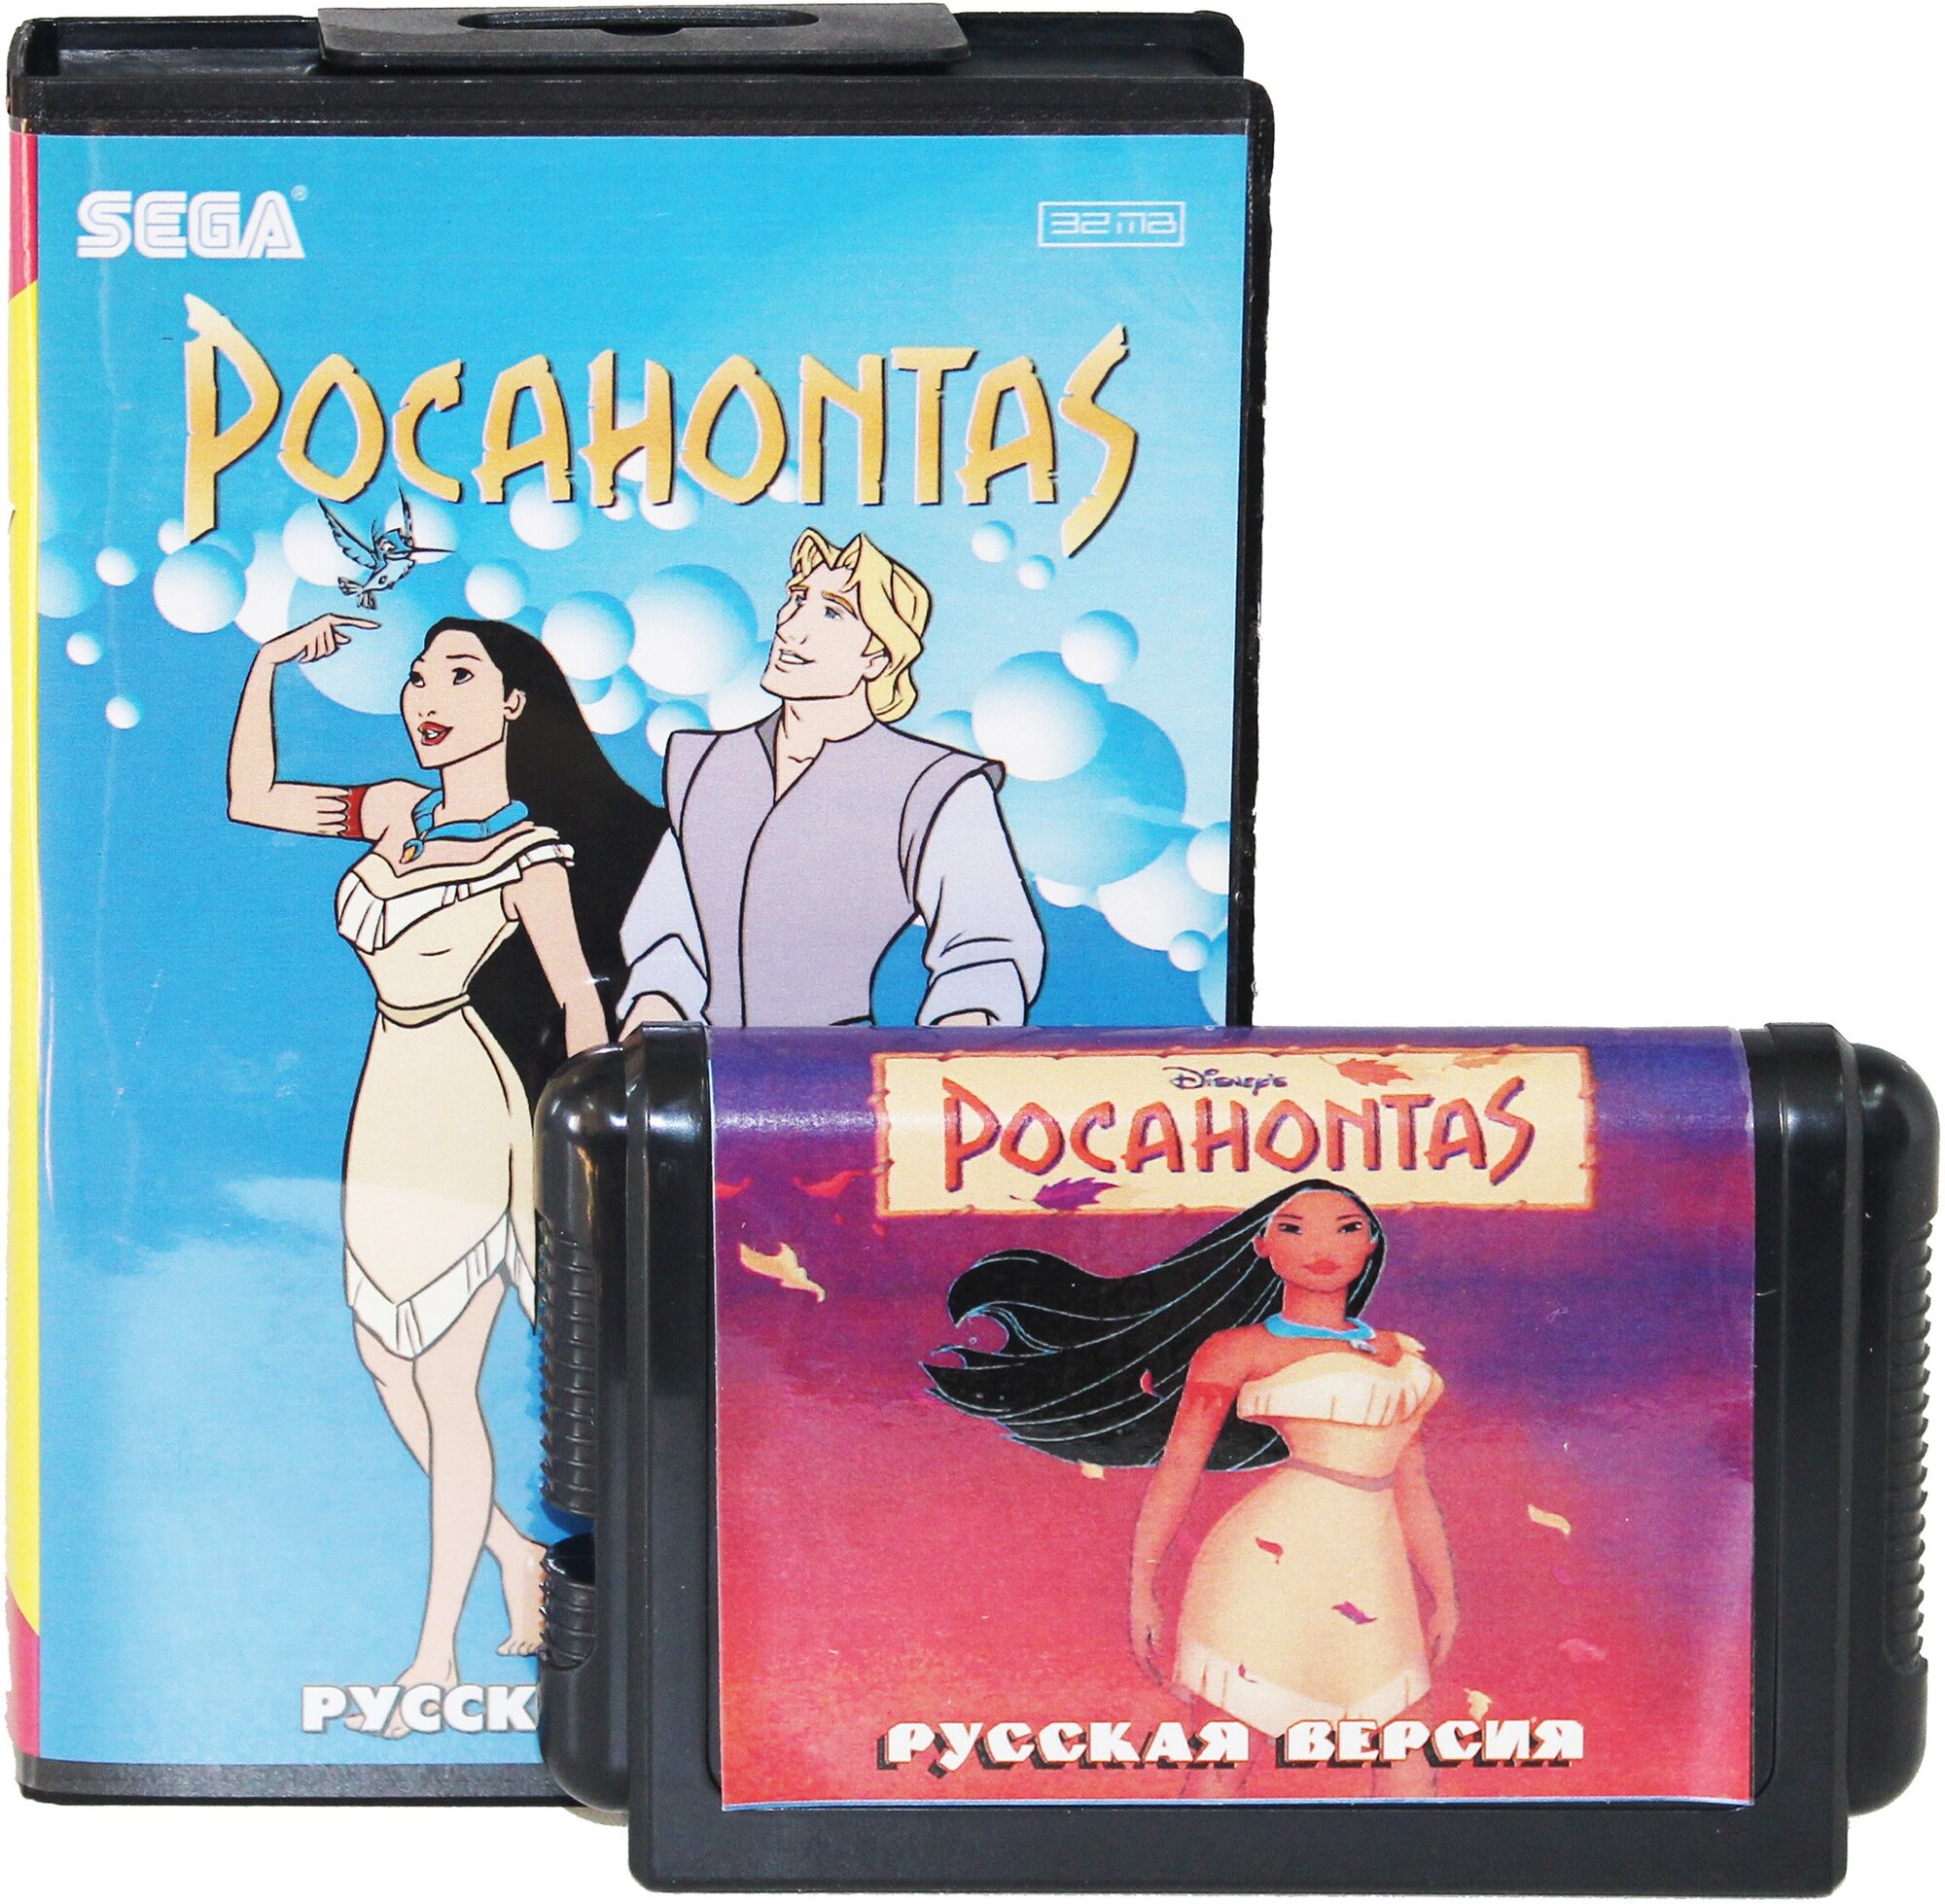 Pocahontas (Покахонтас) - отличная игра по мультфильму о приключениях индейской девушки Покахонтас на Sega